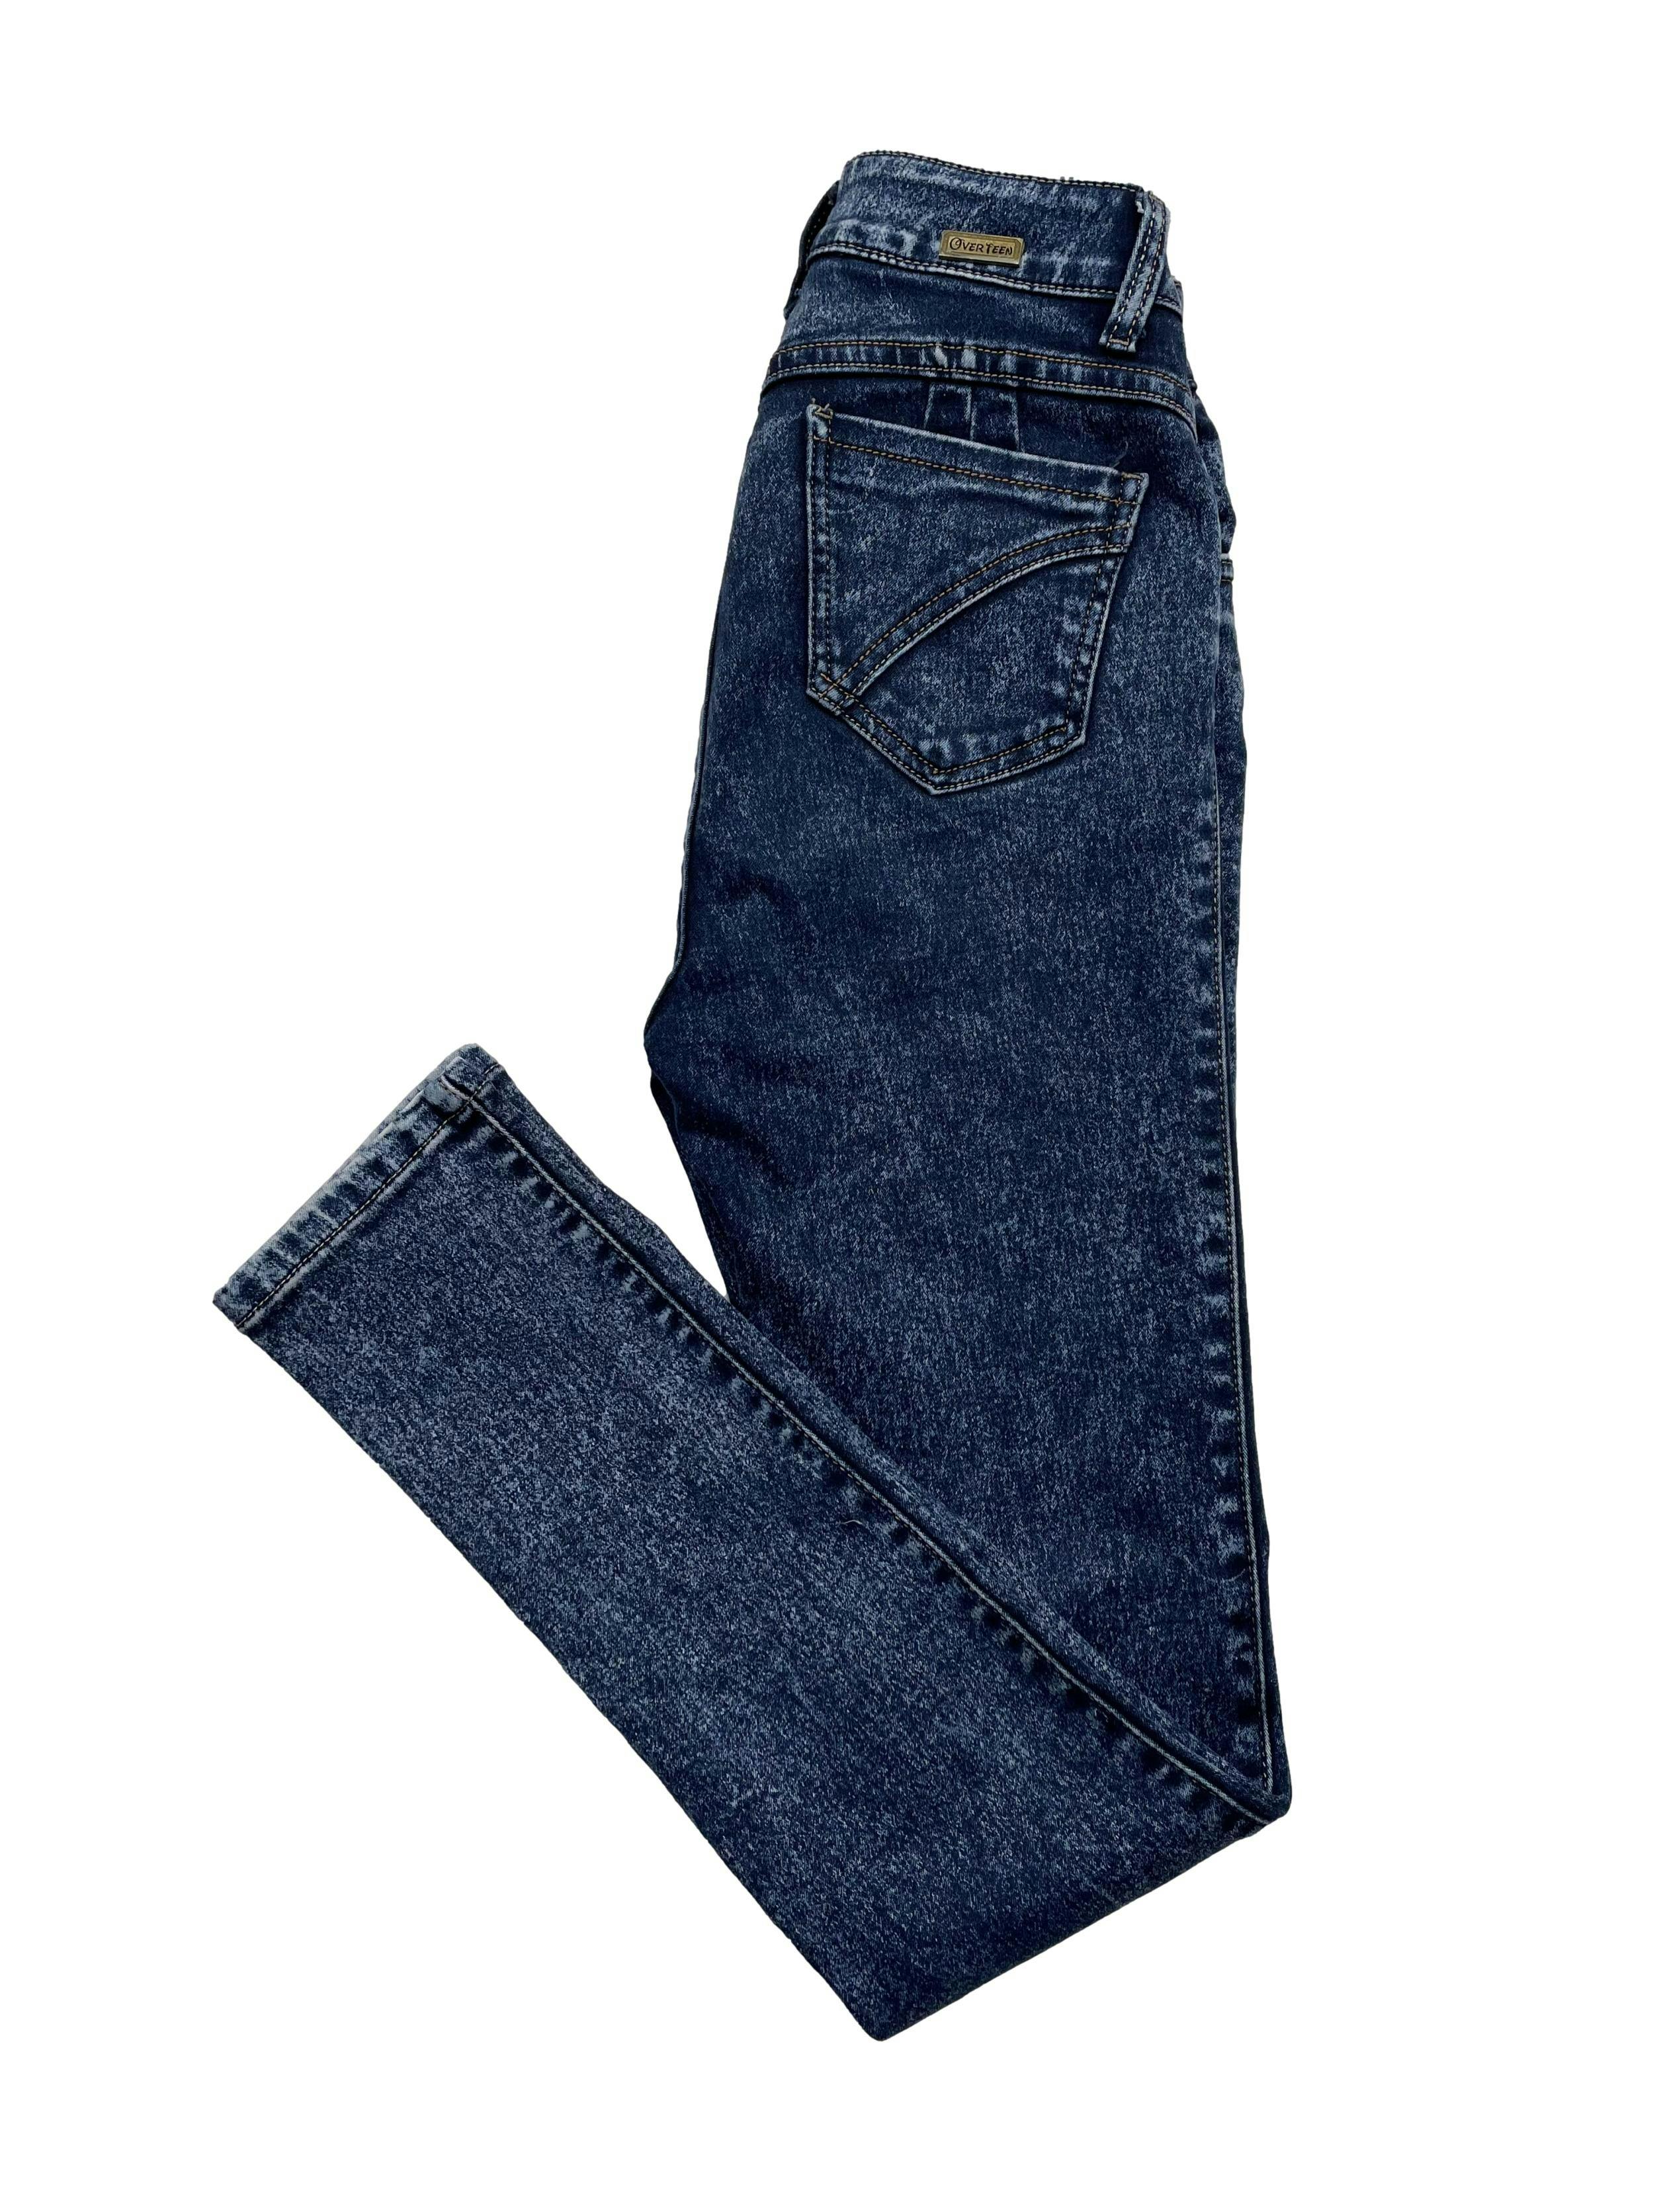 Skinny jean a la cintura azul, efecto nevado. Cintura: 68cm, Largo: 100cm.